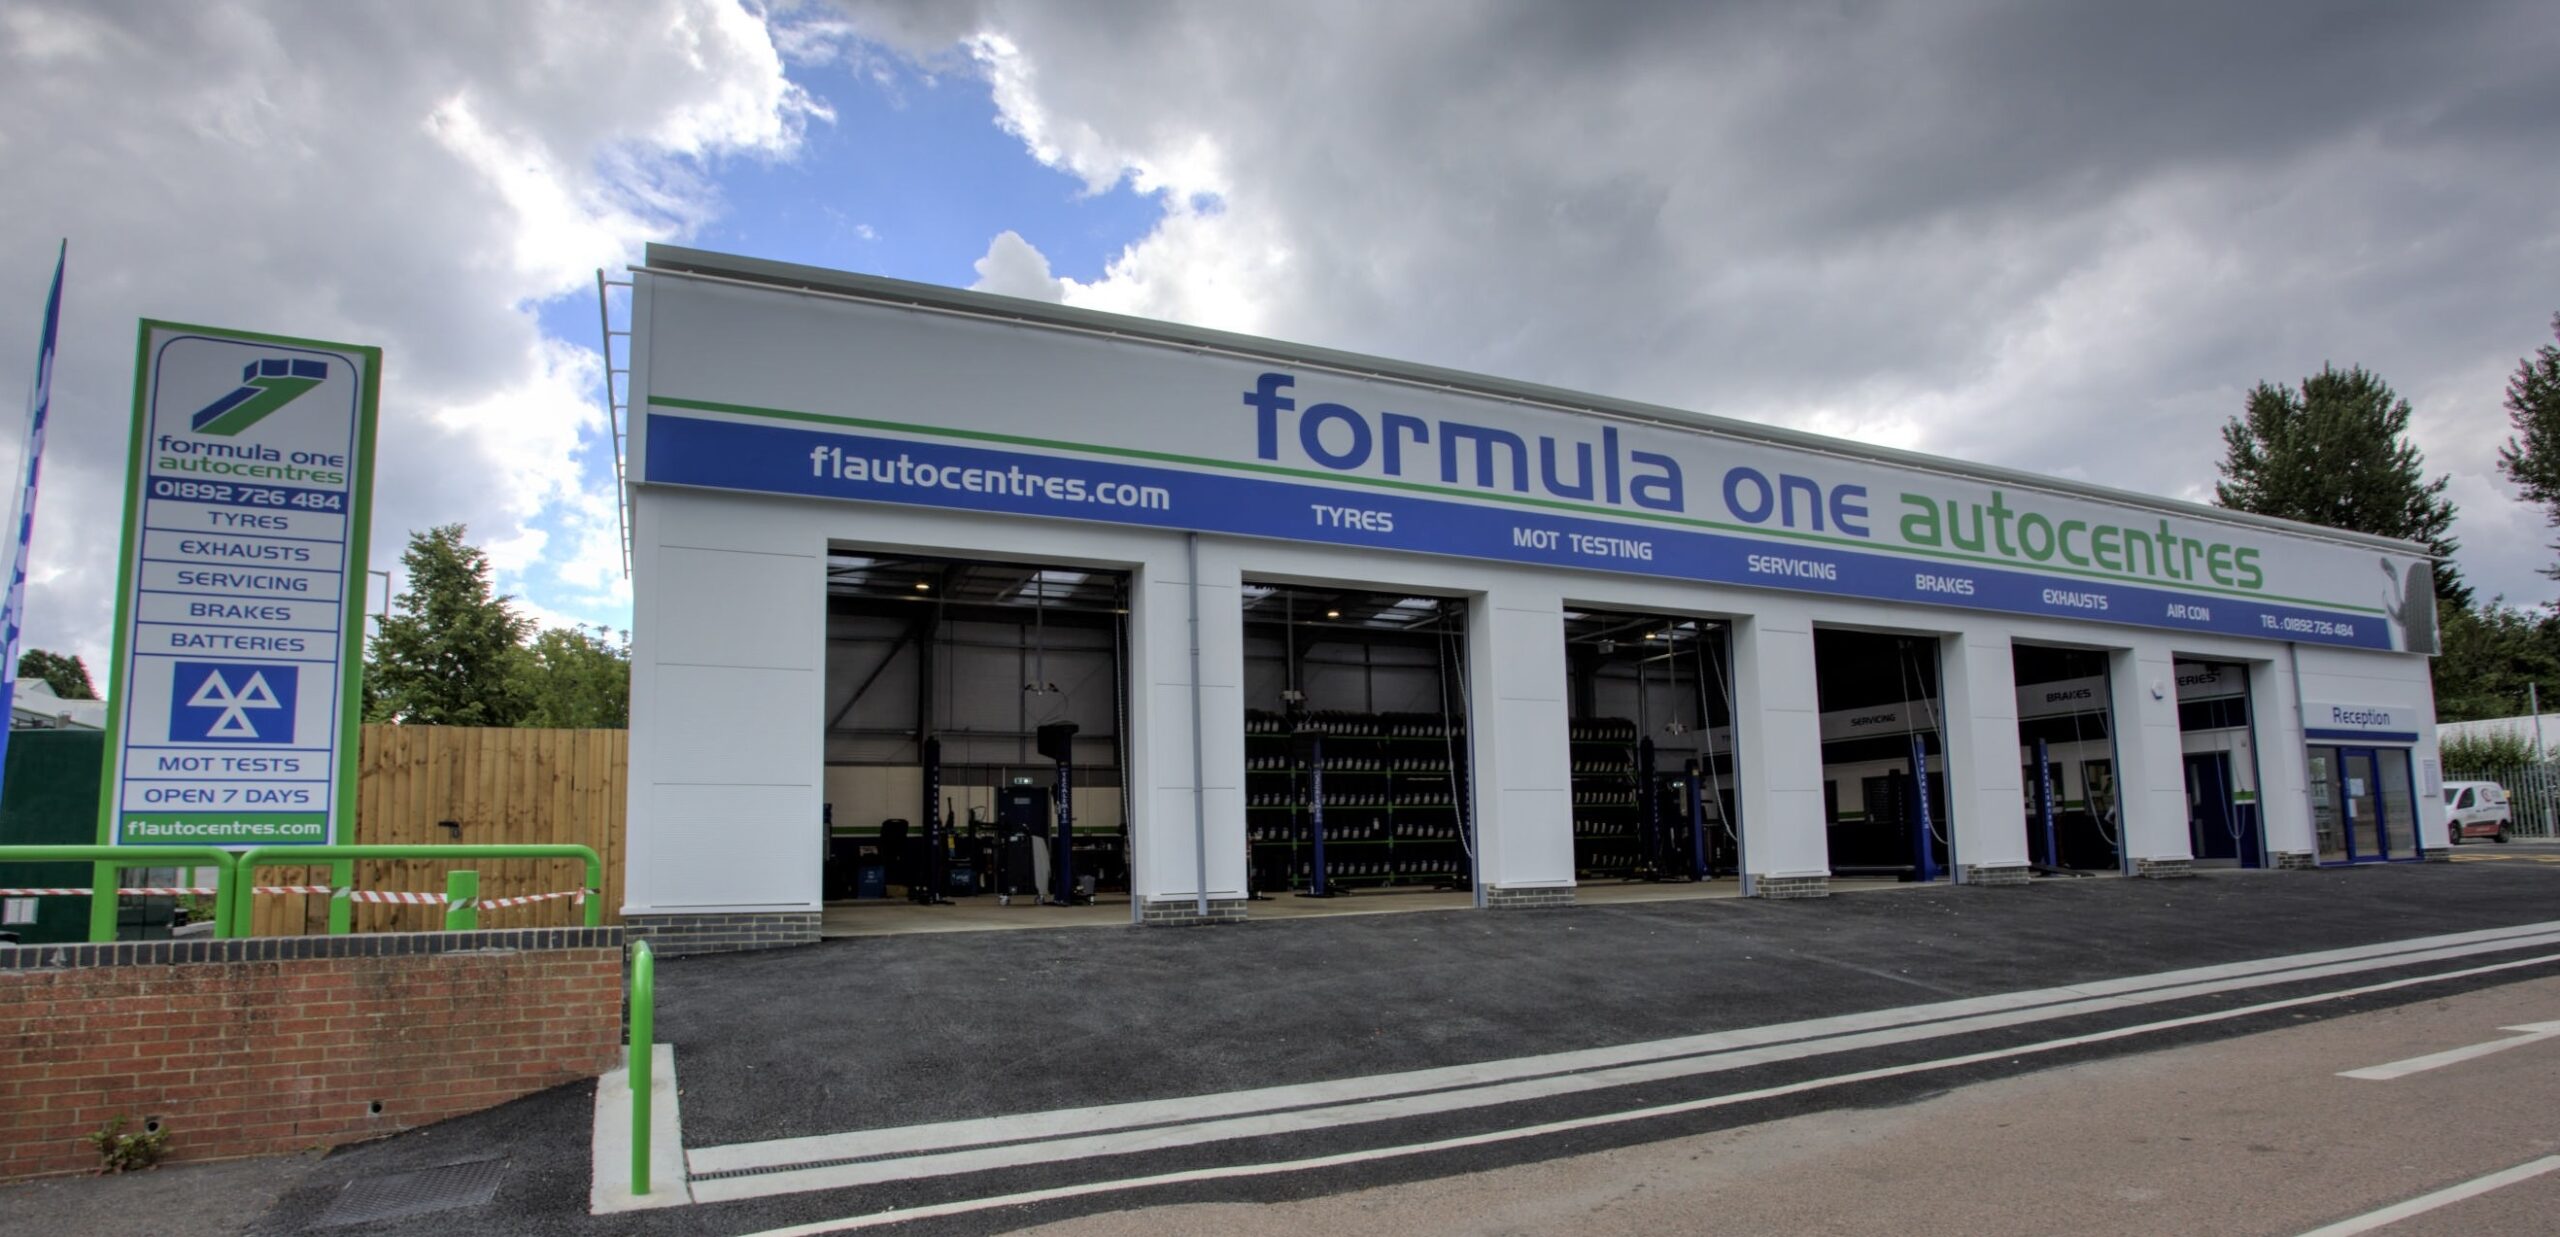 Formula One AutocentresTunbridge Wells GlobalMSI Forecourt Canopy